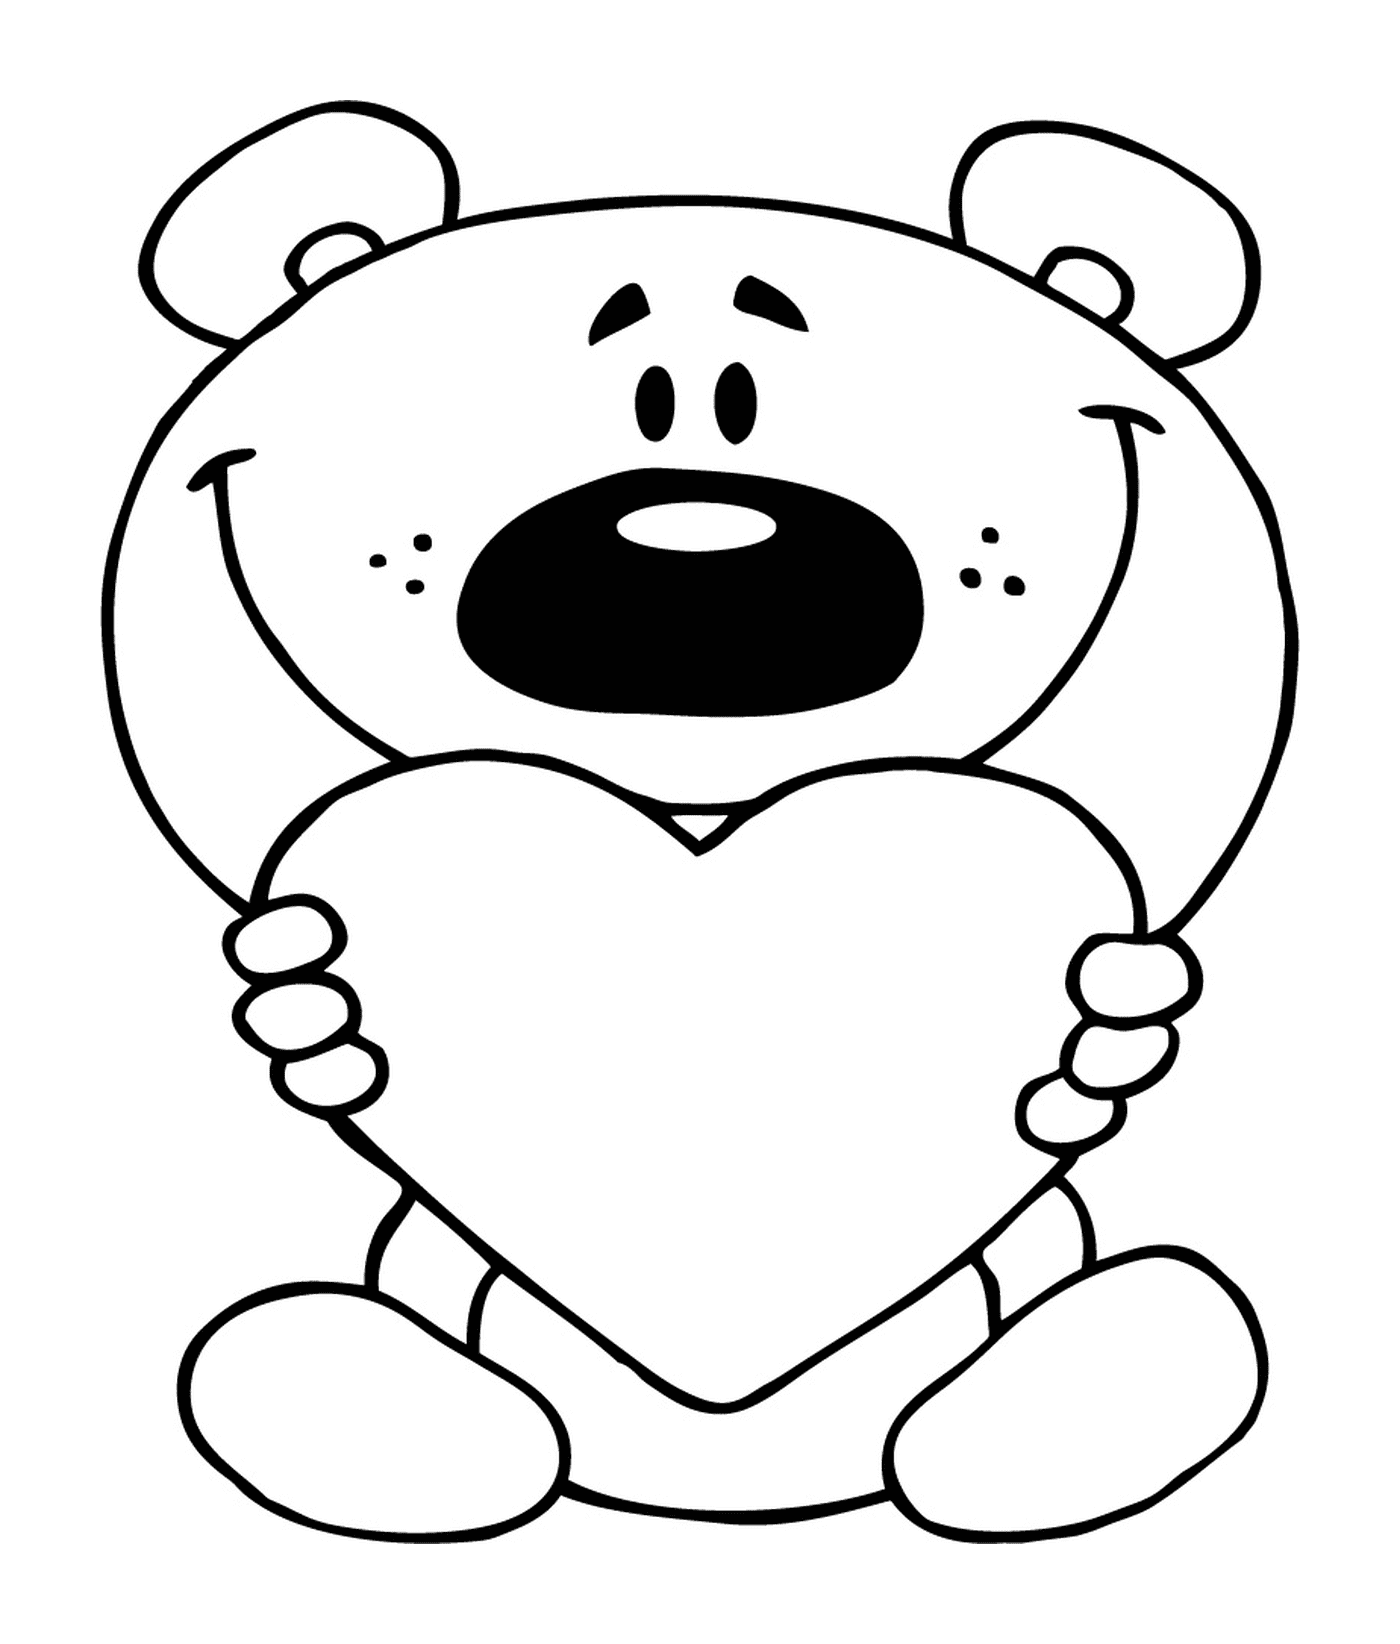  一只泰迪熊抱着一颗心 